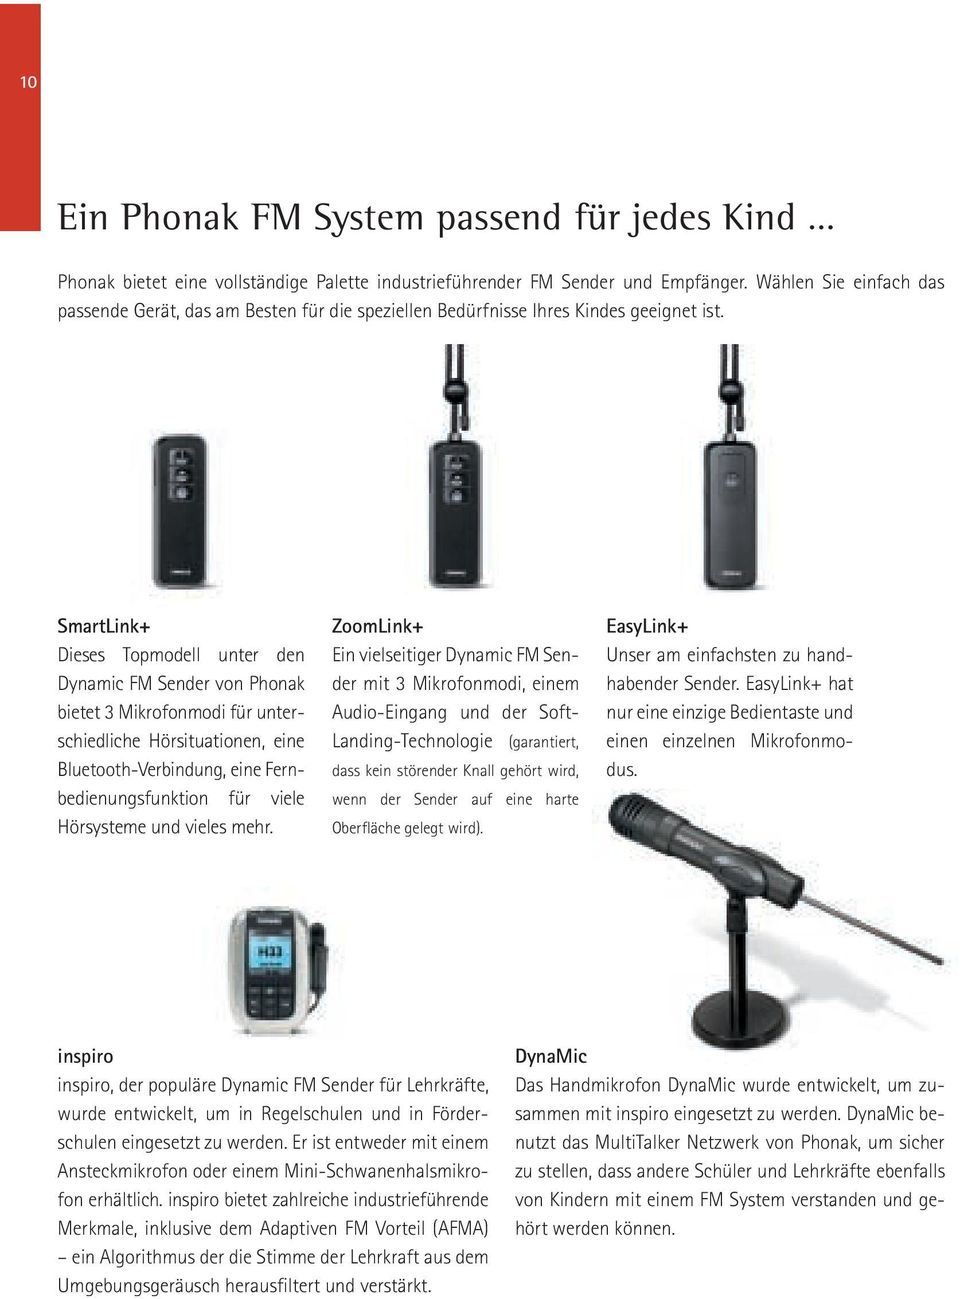 SmartLink+ Dieses Topmodell unter den Dynamic FM Sender von Phonak bietet 3 Mikrofonmodi für unterschiedliche Hörsituationen, eine Bluetooth-Verbindung, eine Fernbedienungsfunktion für viele